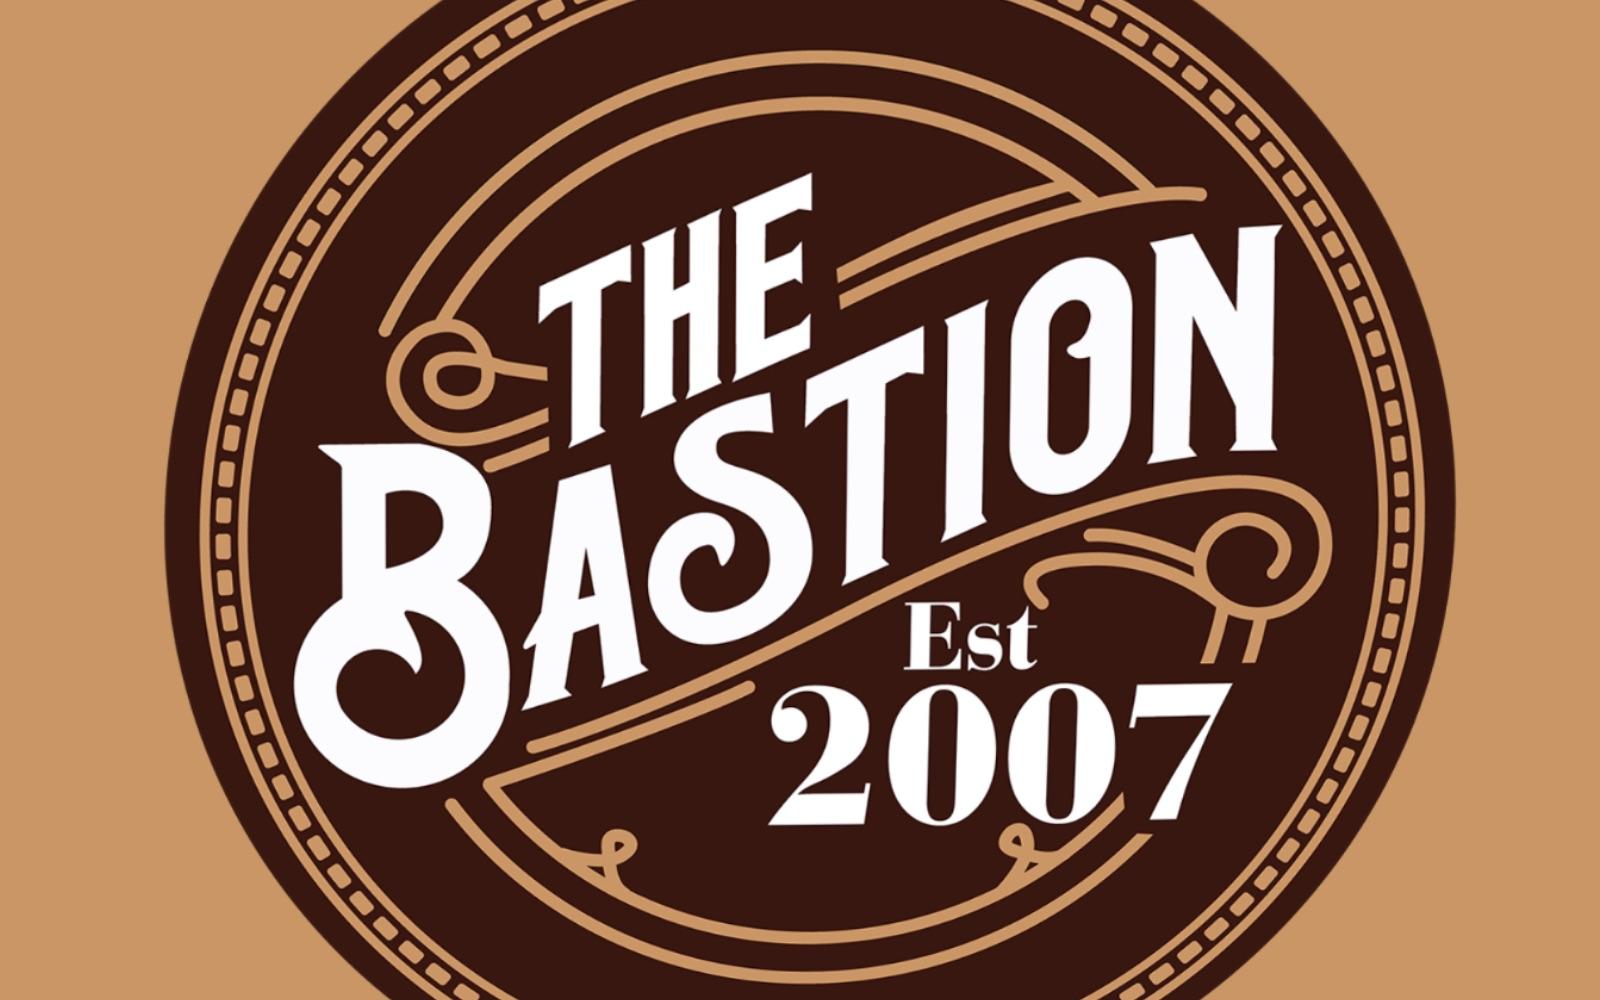 The Bastion Image